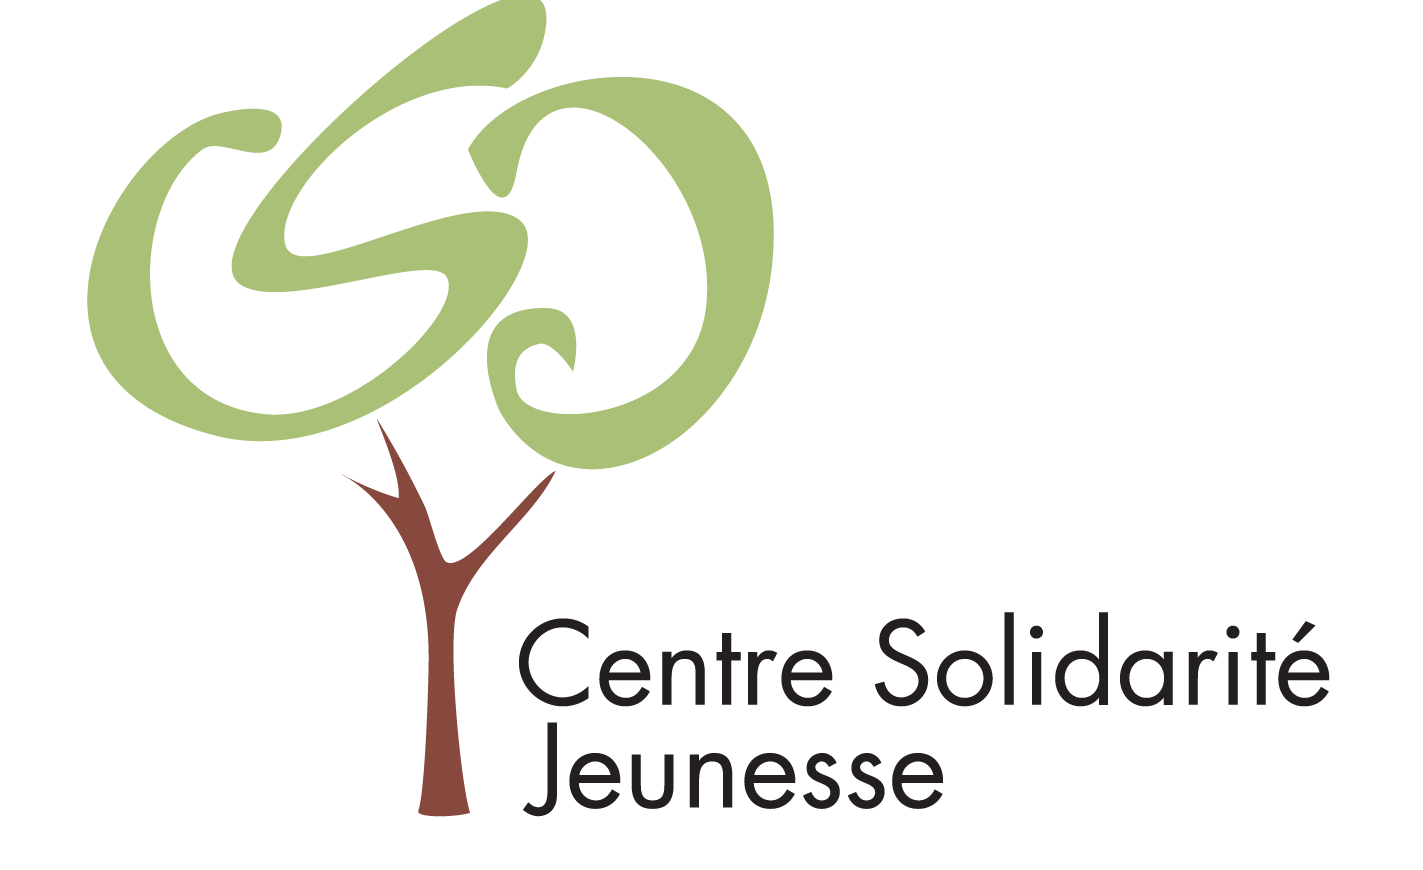 Centre Solidarité Jeunesse